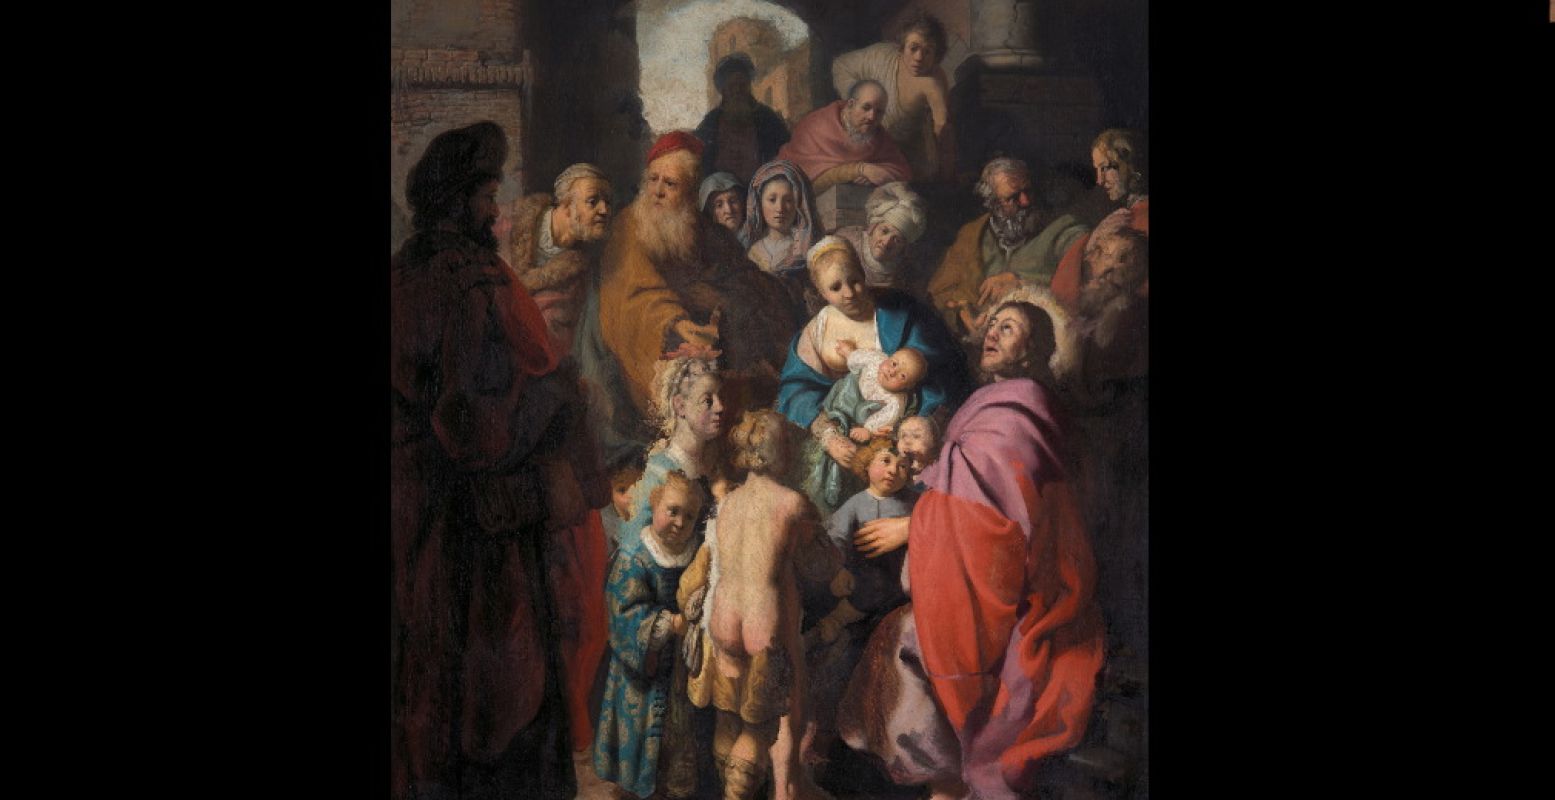  Laat de kindertjes tot mij komen  ca. 1627-1628. Rembrandt. Jan Six Fine Art, Amsterdam. Foto: Museum De Lakenhal